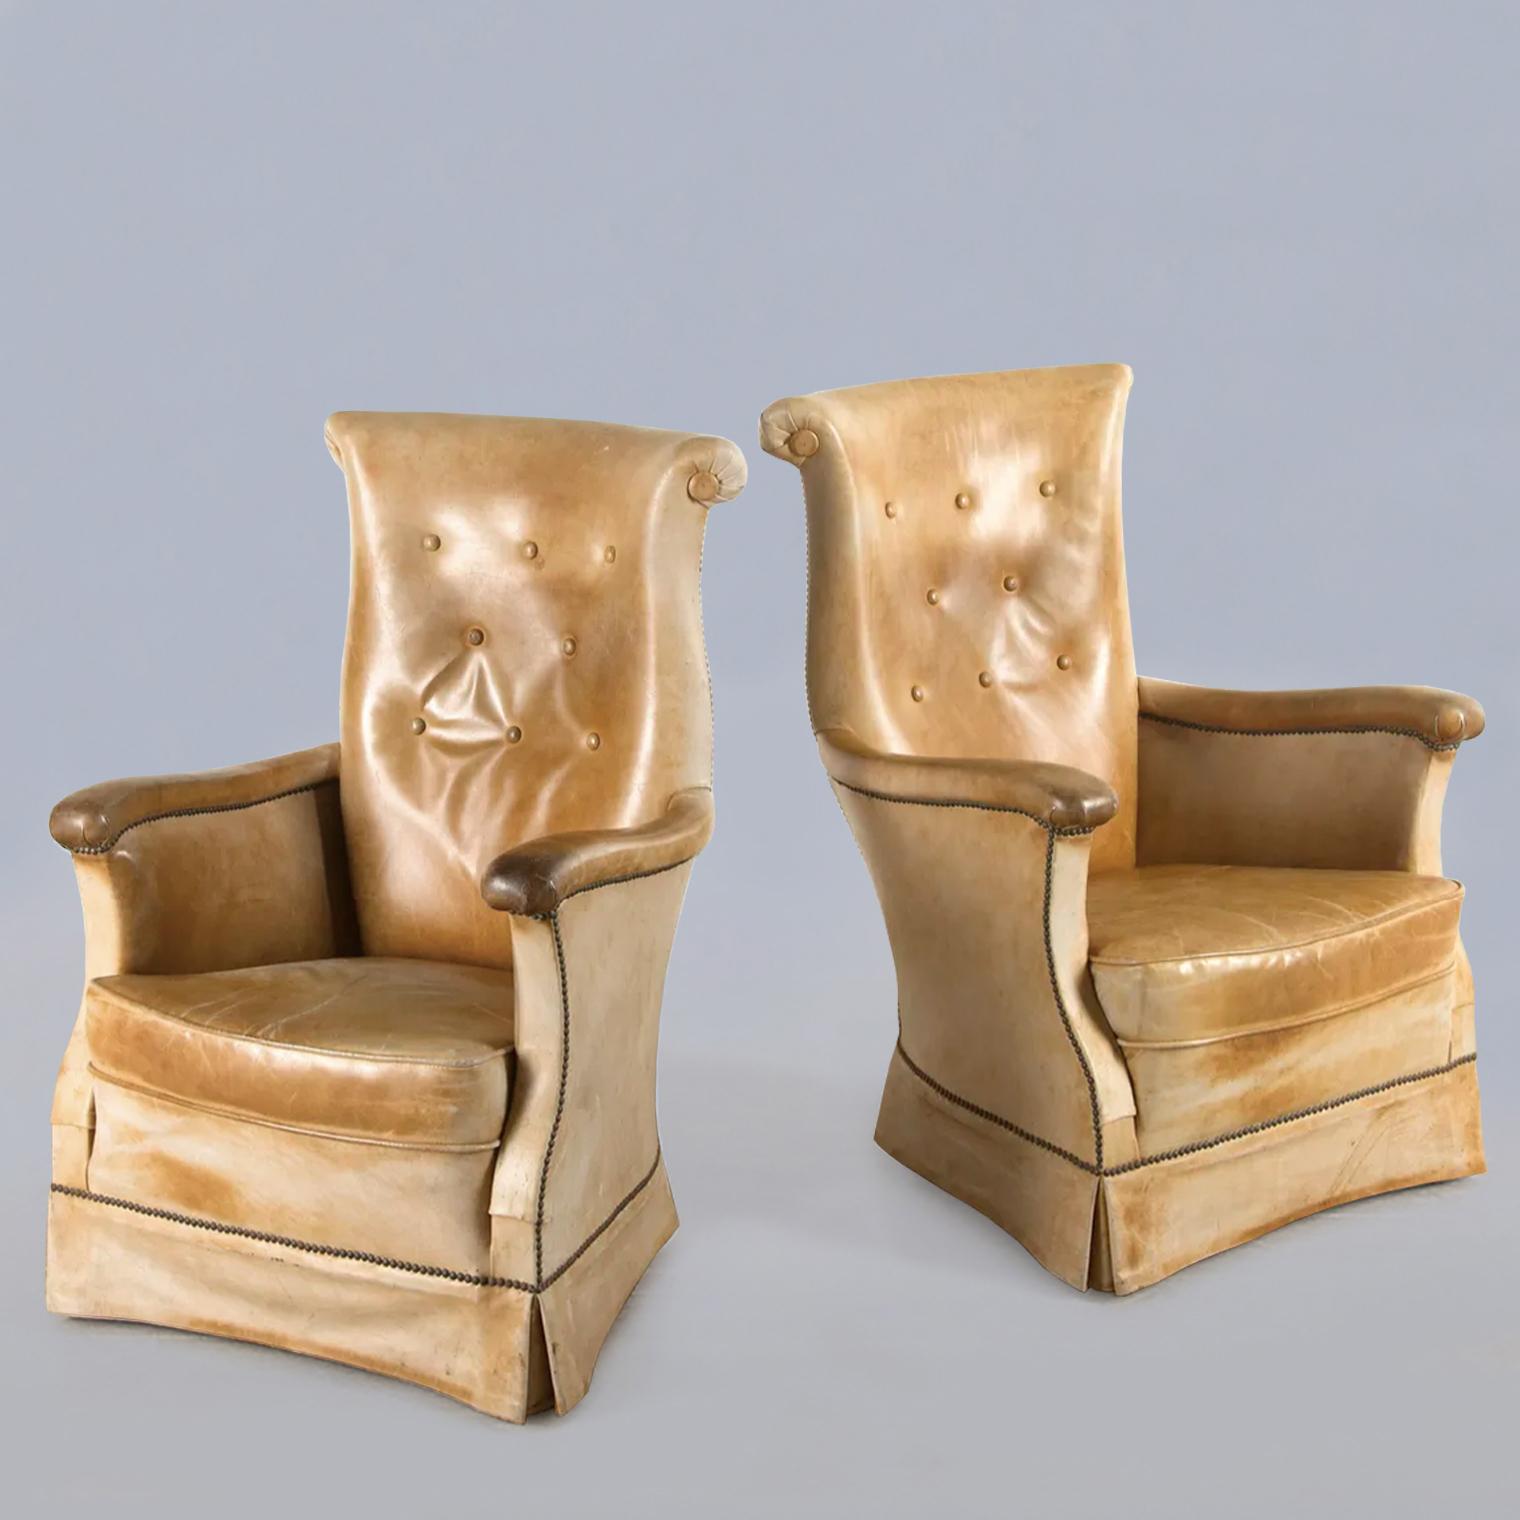 Merveilleux fauteuils français en beau cuir beige pâle, accoudoirs et dossier minces. Extrêmement confortable et élégante.
 